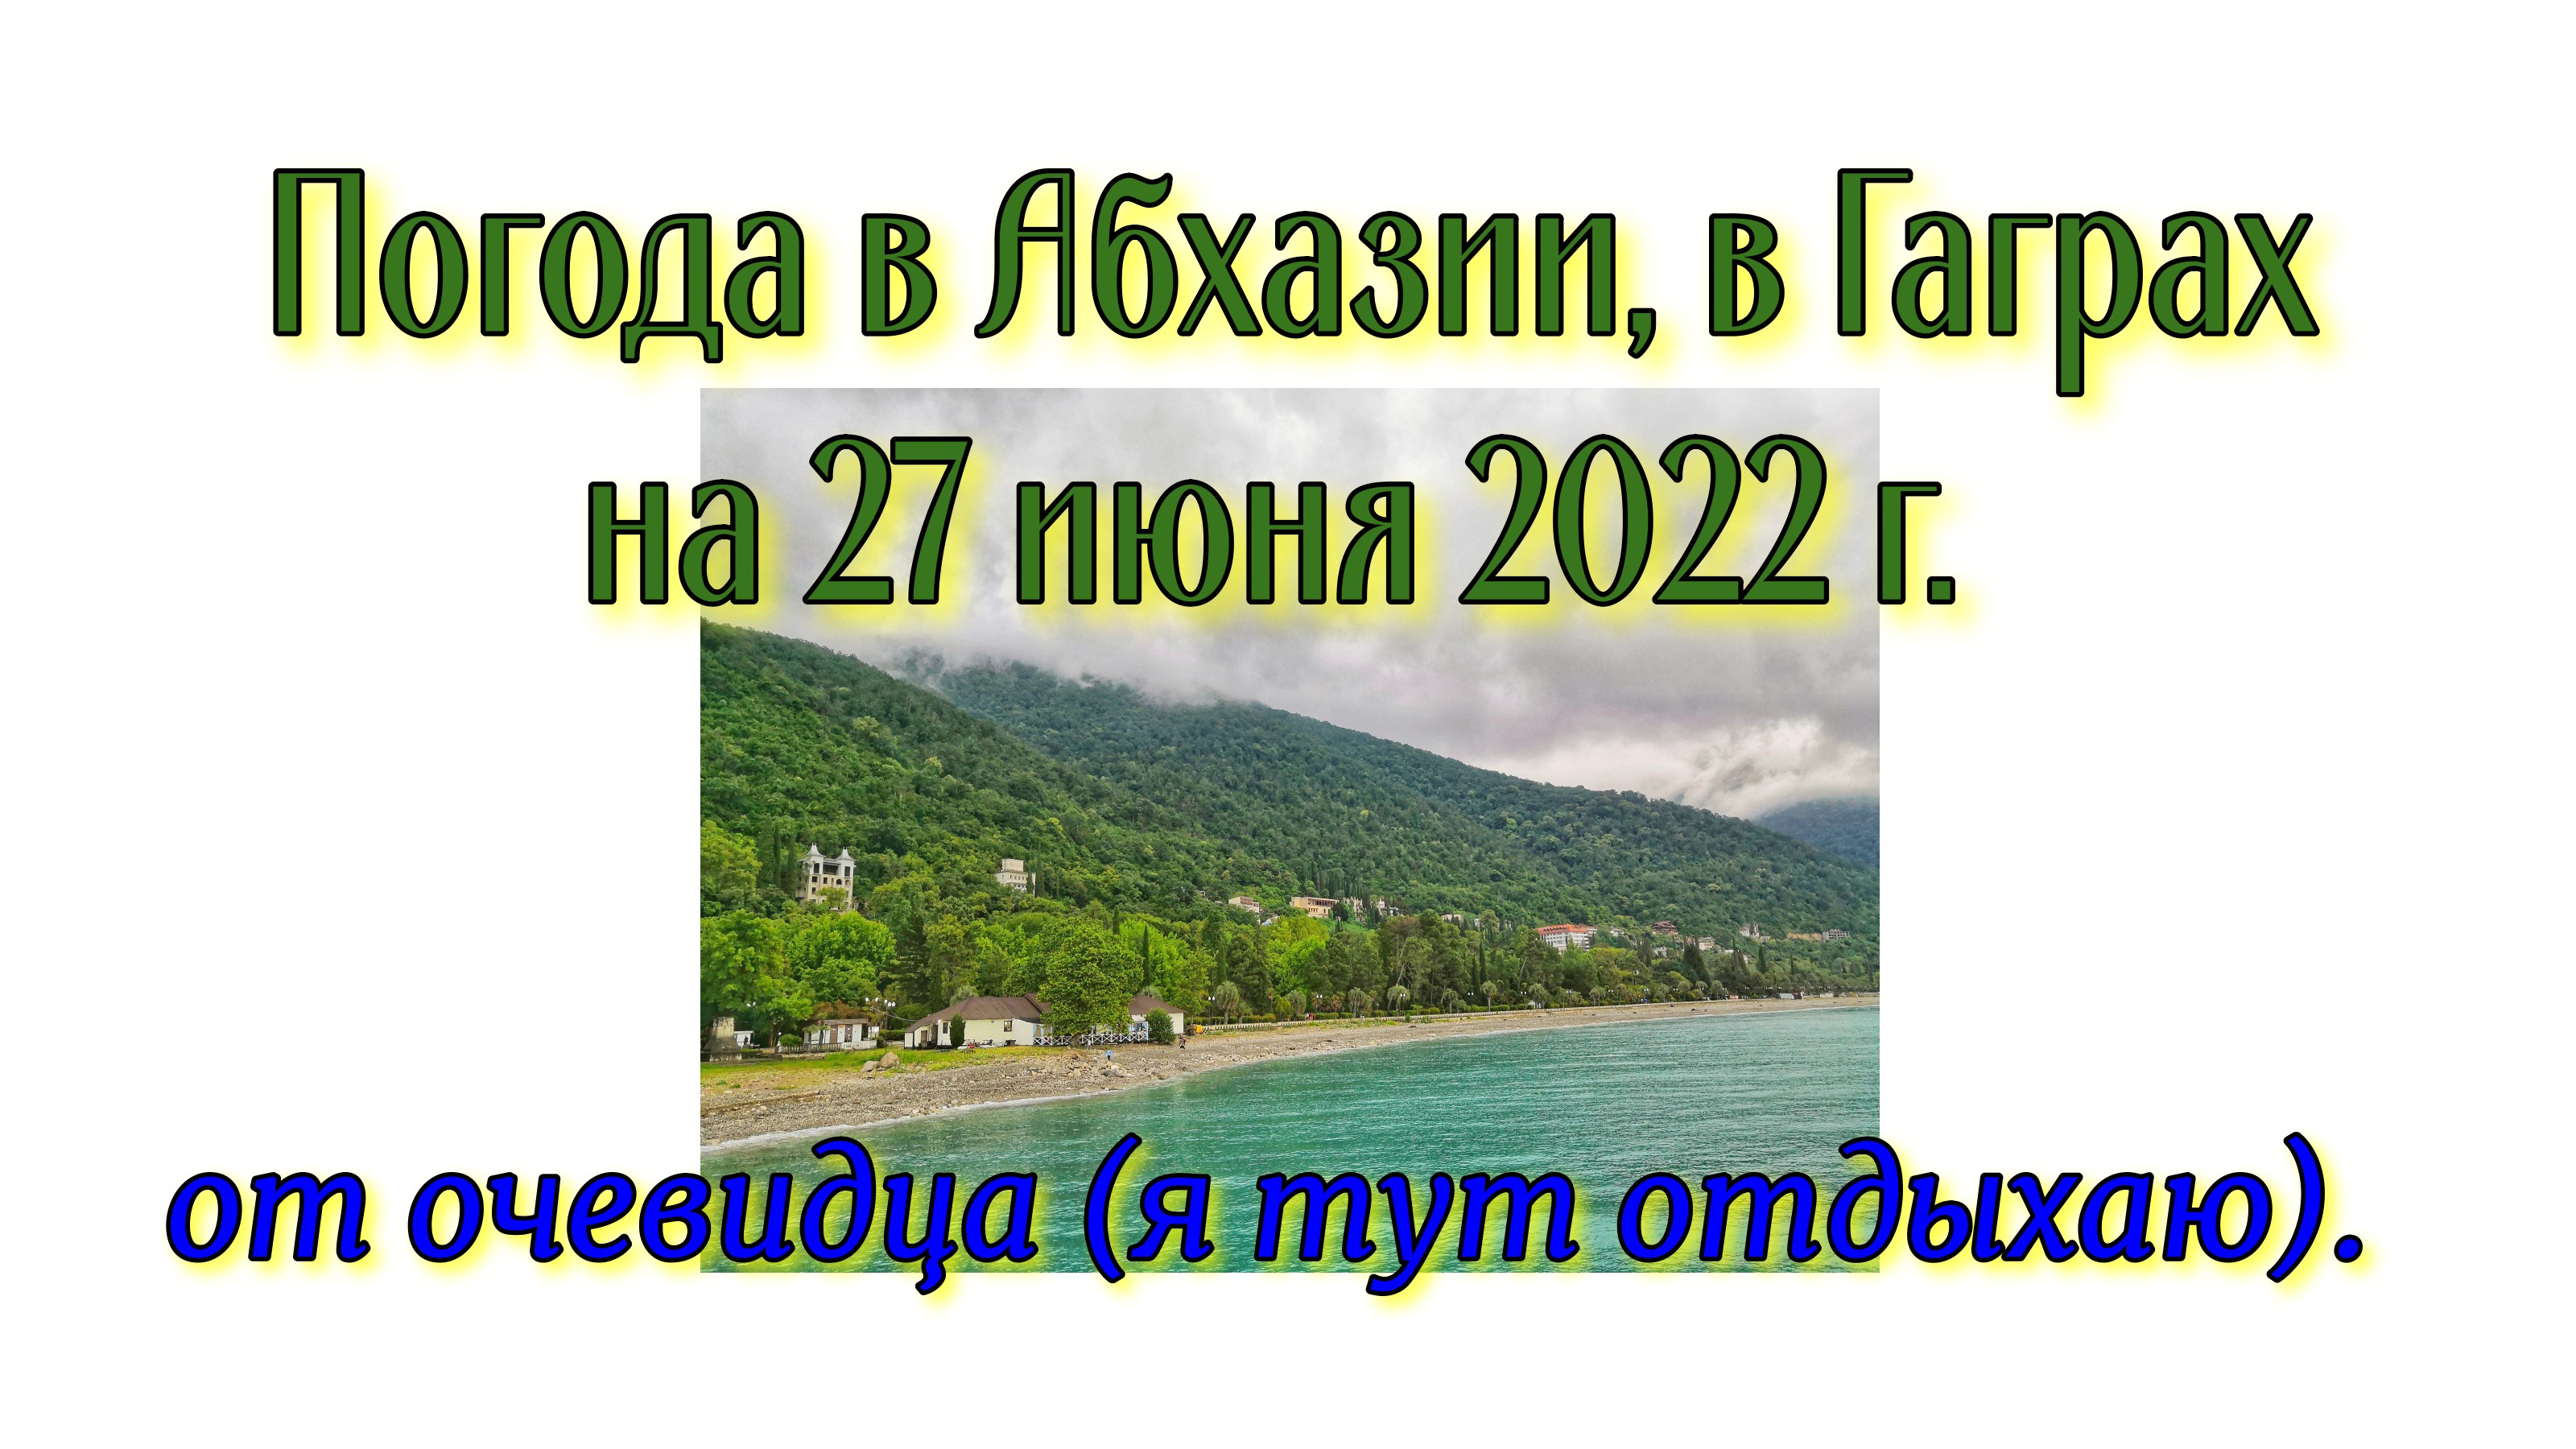 абхазия отдых 2022 гагры